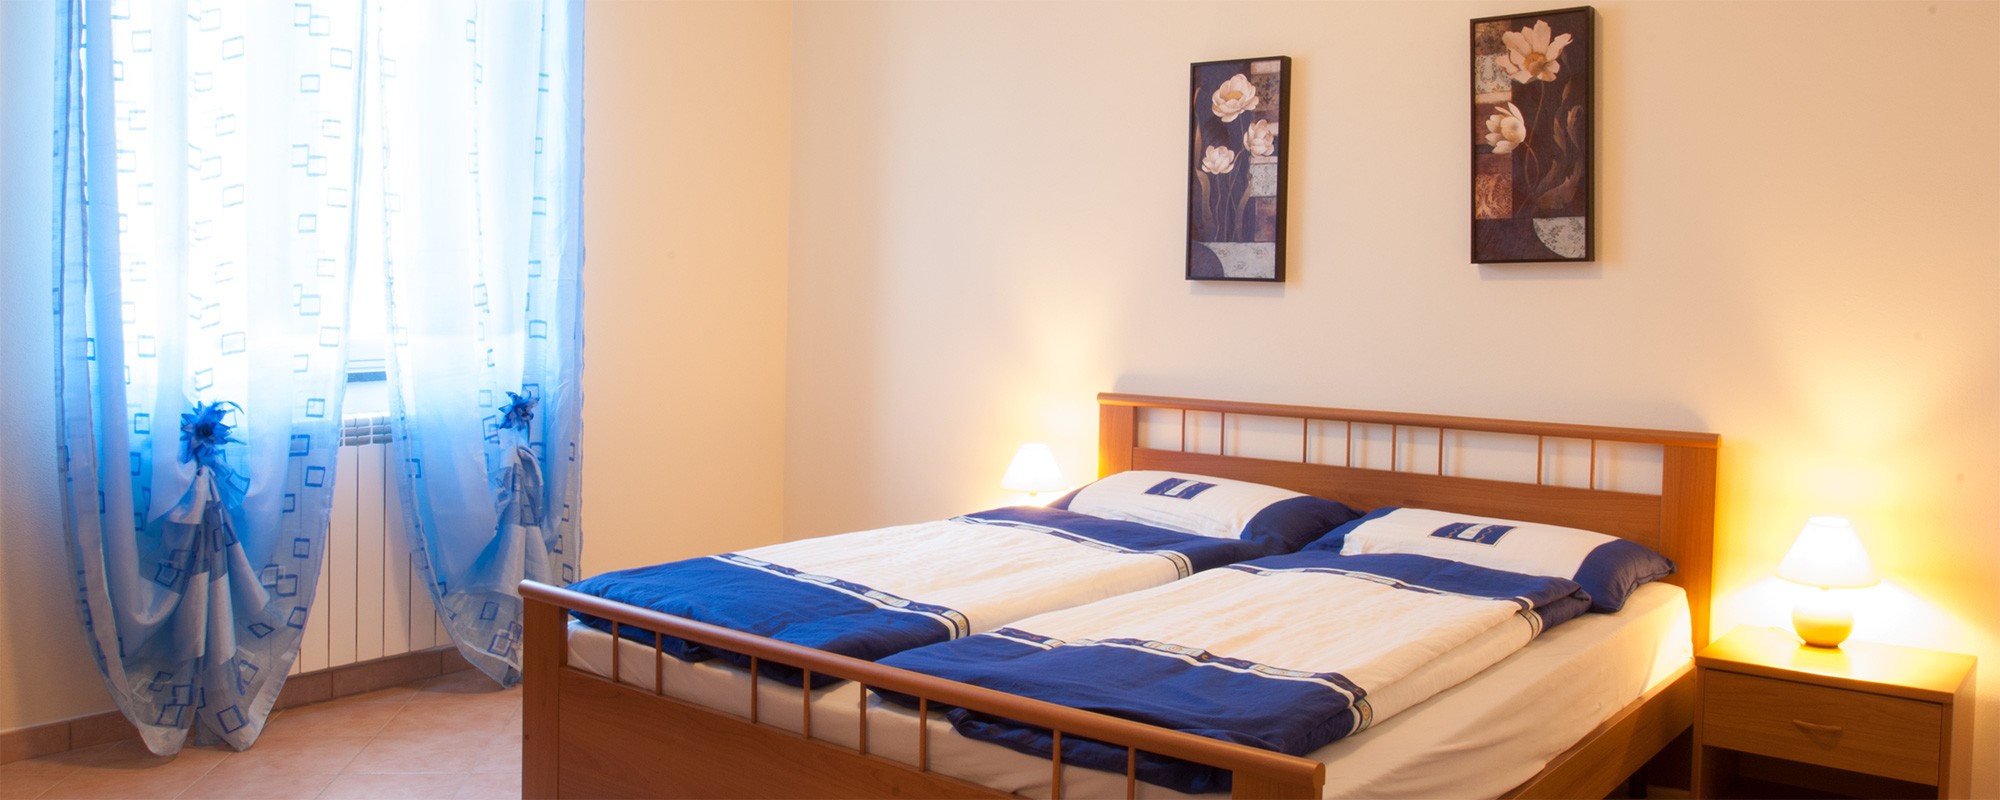 Schlafzimmer-Ferienwohnung-Ferienhaus-Sizilien-Ferien-Parco-Verde-GER-0446-S